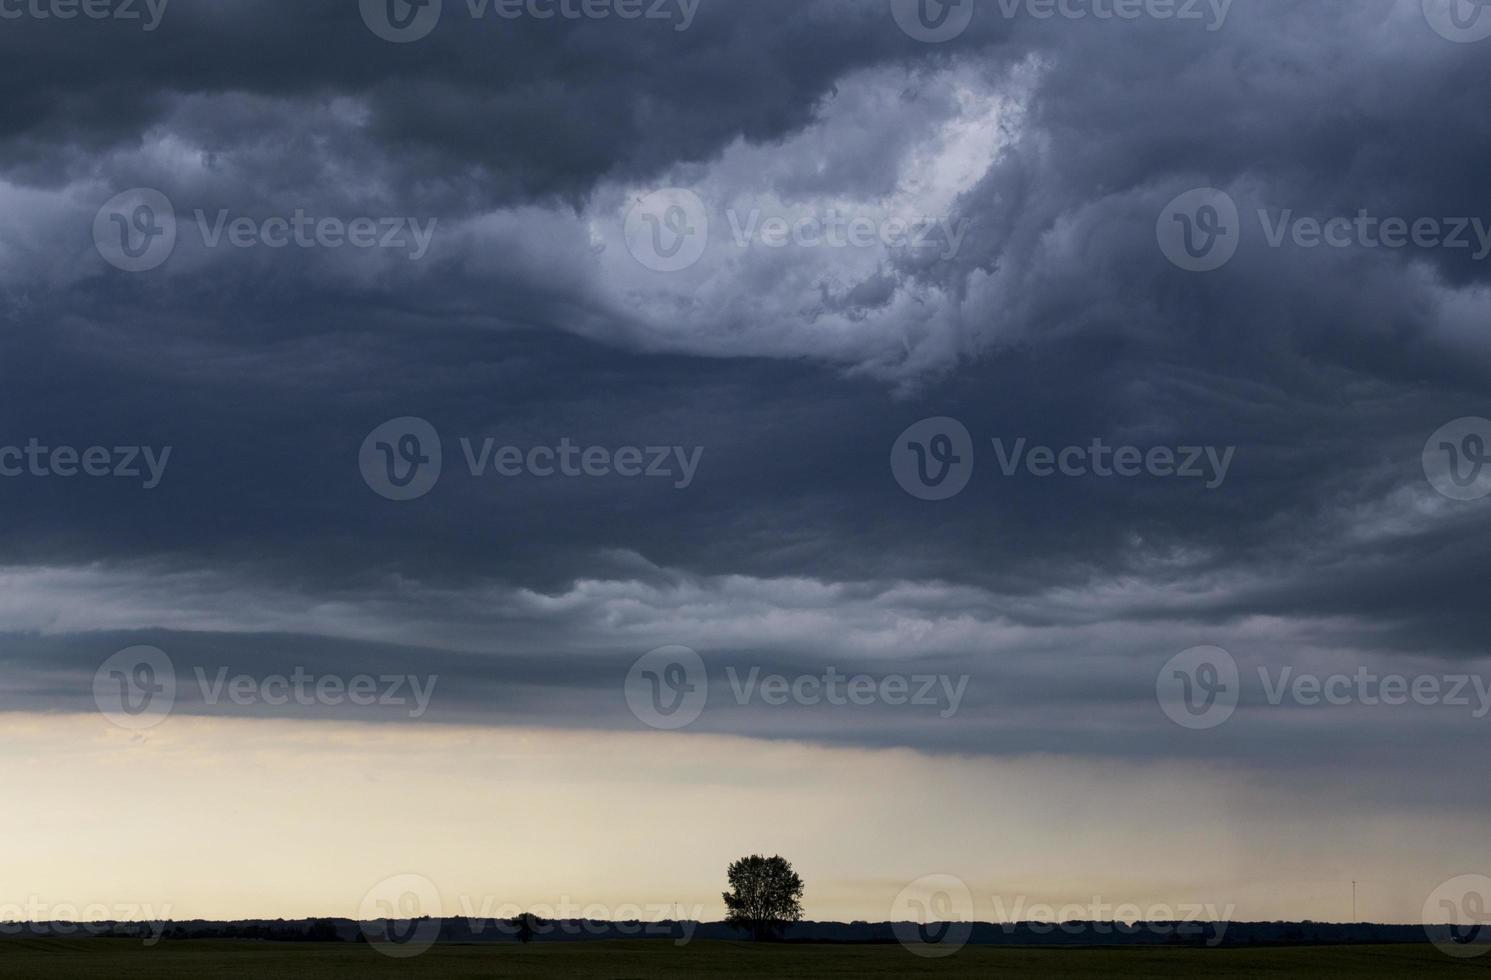 onweerswolken prairie hemel foto